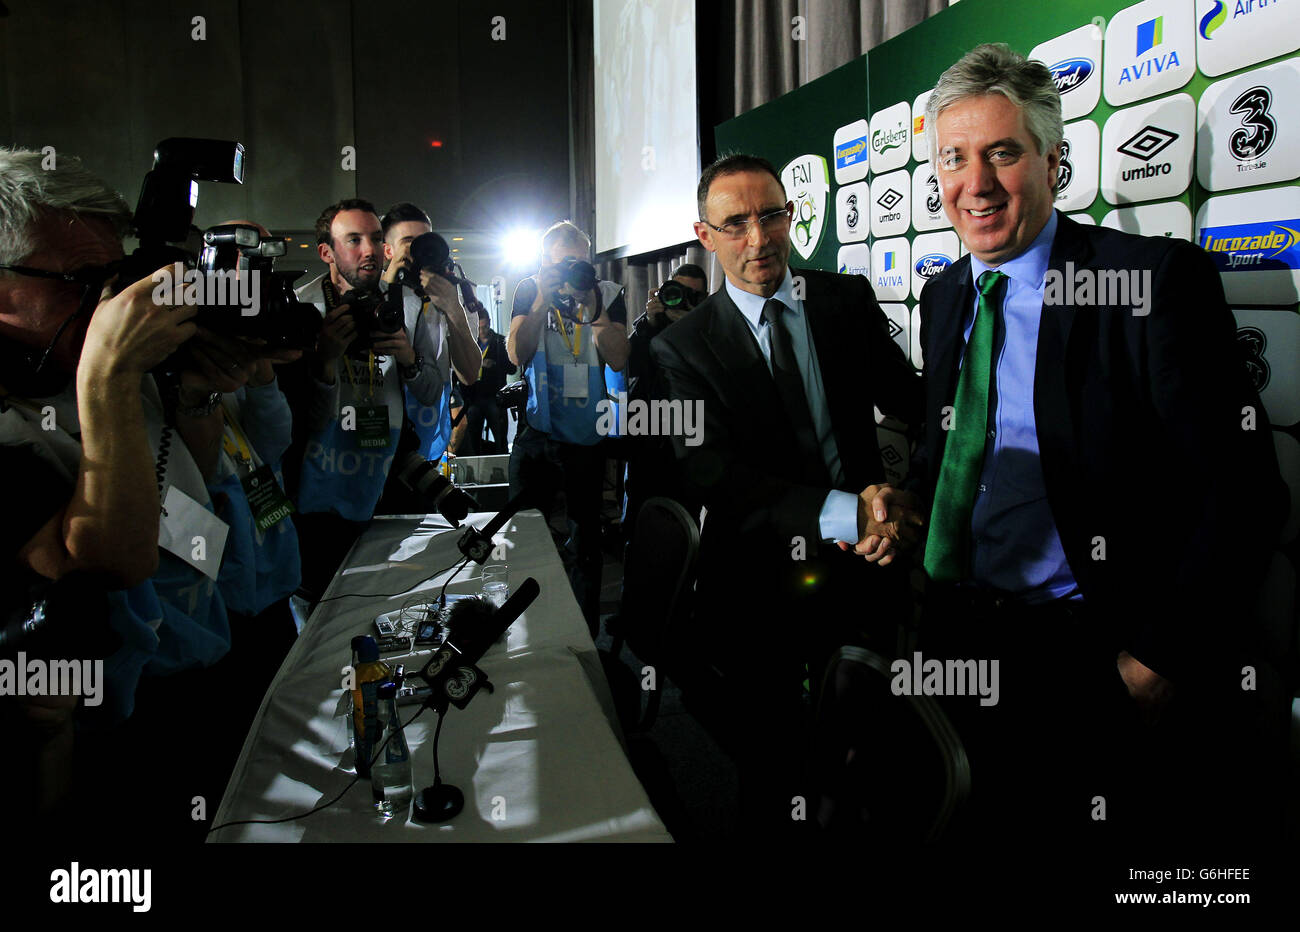 Il direttore della Nuova Repubblica d'Irlanda Martin o'Neill (a sinistra) con l'amministratore delegato della fai John Delaney durante una conferenza stampa al Gibson Hotel, Dublino, Irlanda. Foto Stock